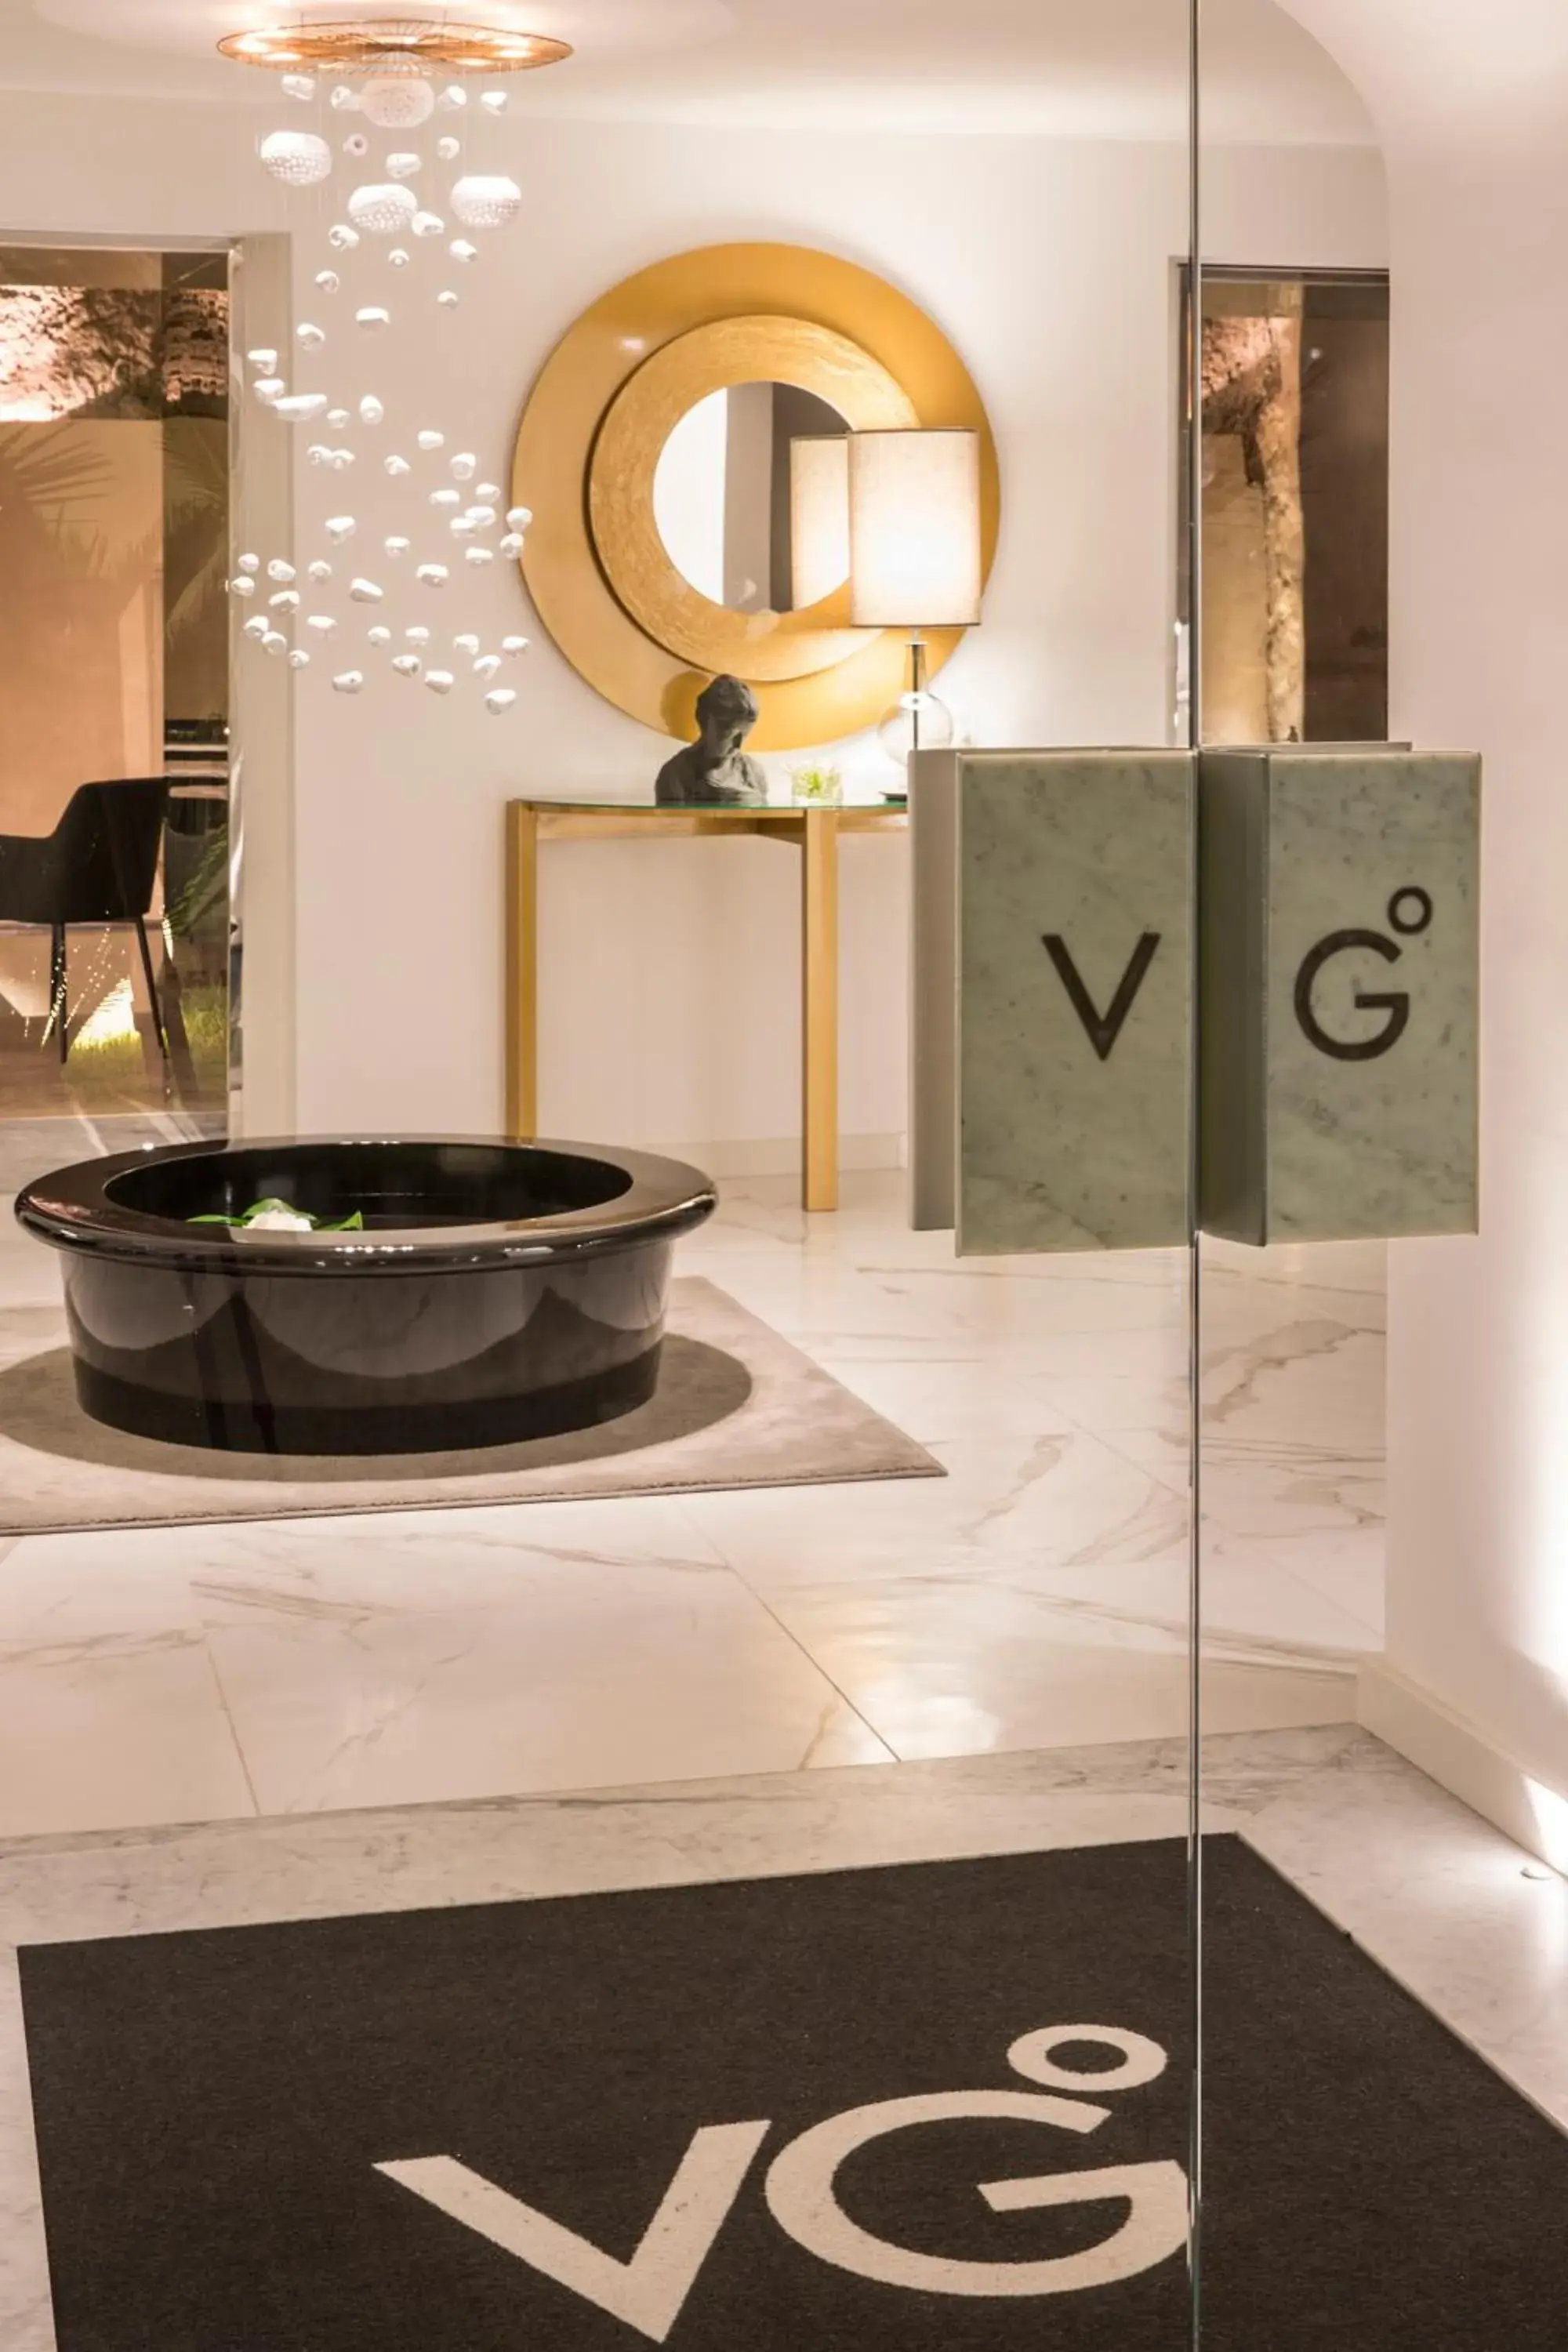 Lobby or reception, Bathroom in Villa Gervasio